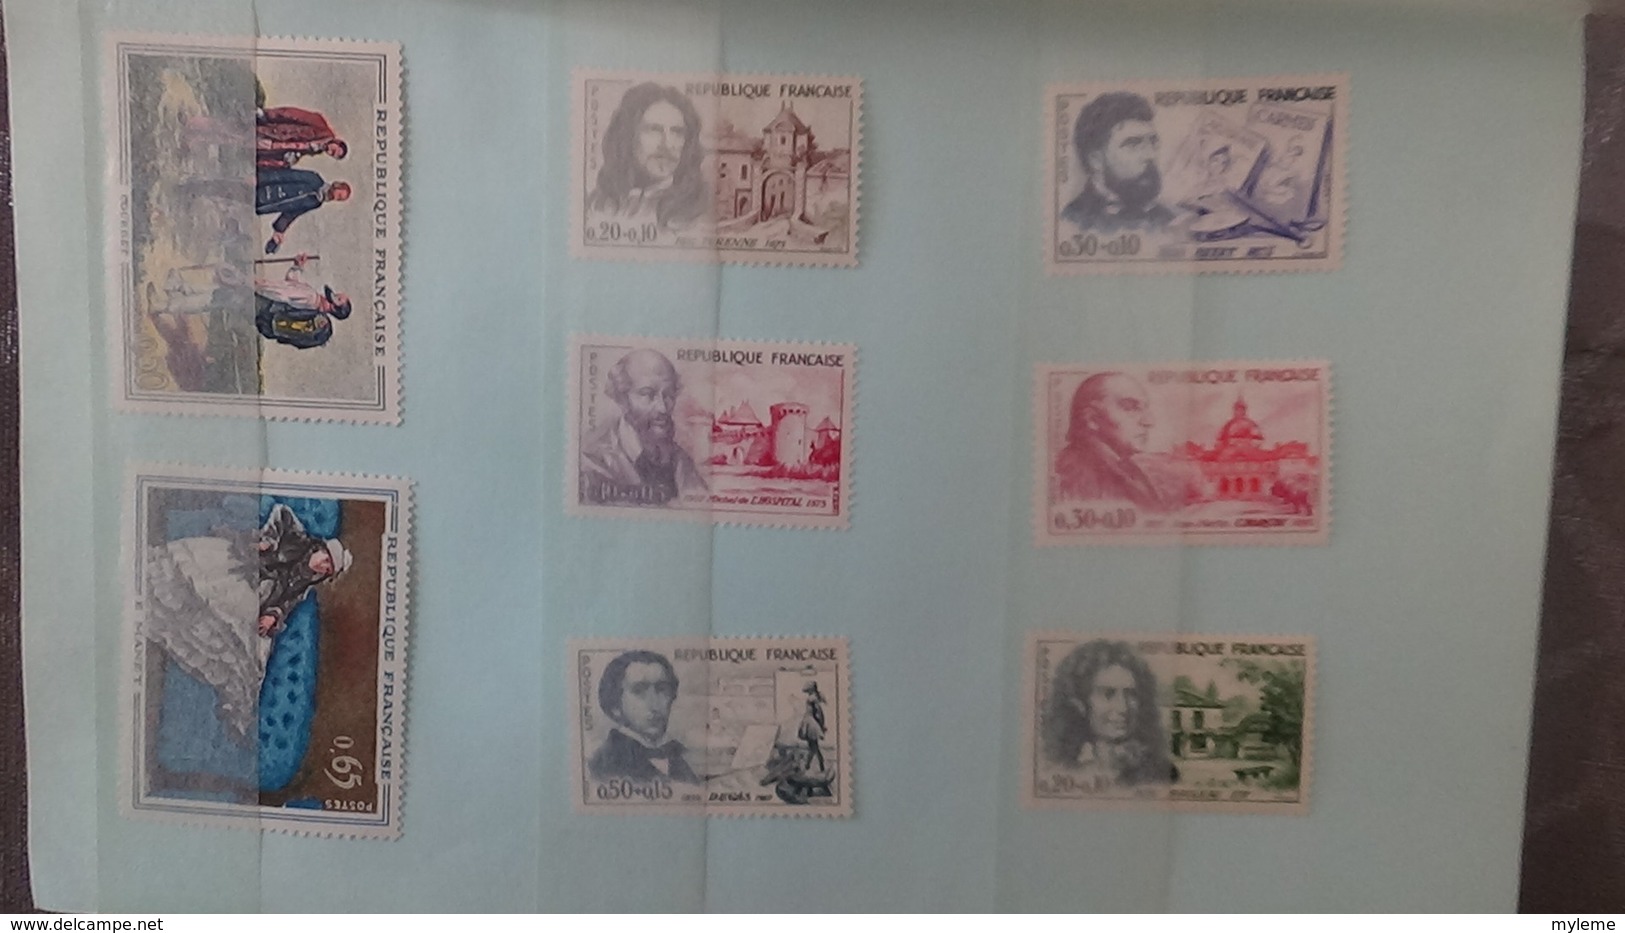 Carnet à choix dont séries grands hommes, timbres ànnées 40 à 60, carnets croix rouge  tout est **. Côte très sympa !!!